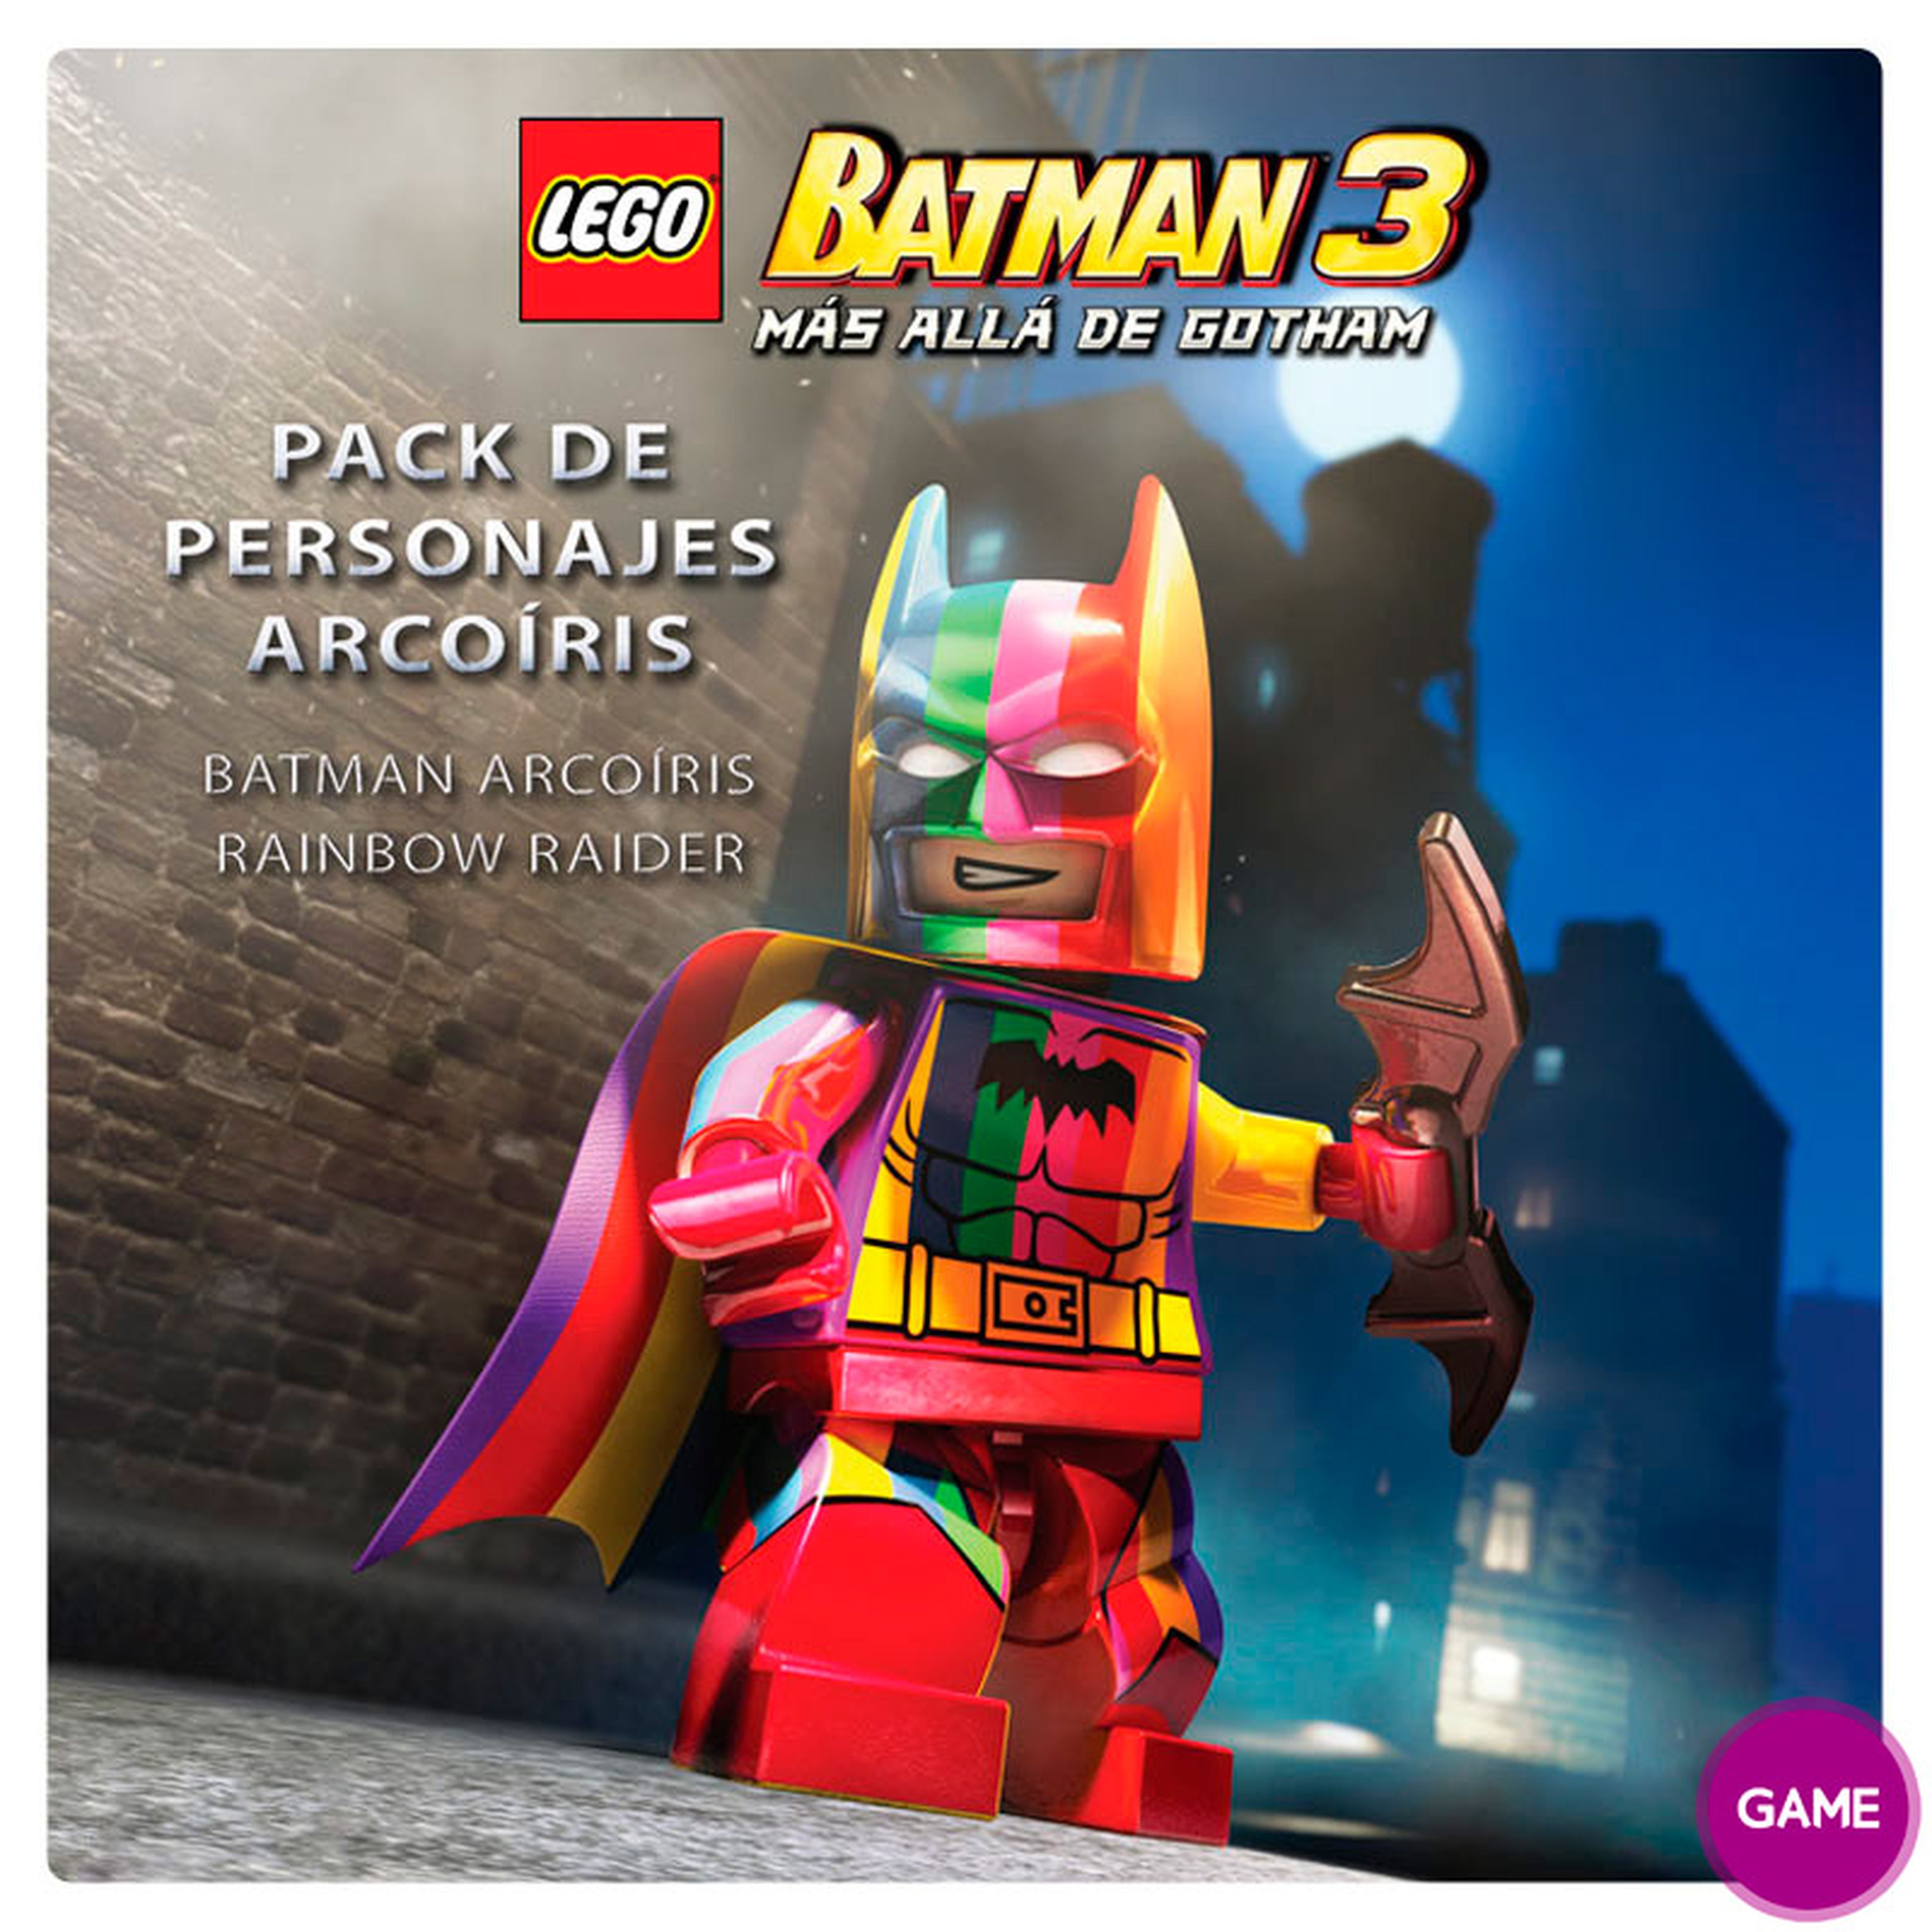 Incentivos de reserva de LEGO Batman 3 Más Allá de Gotham en GAME